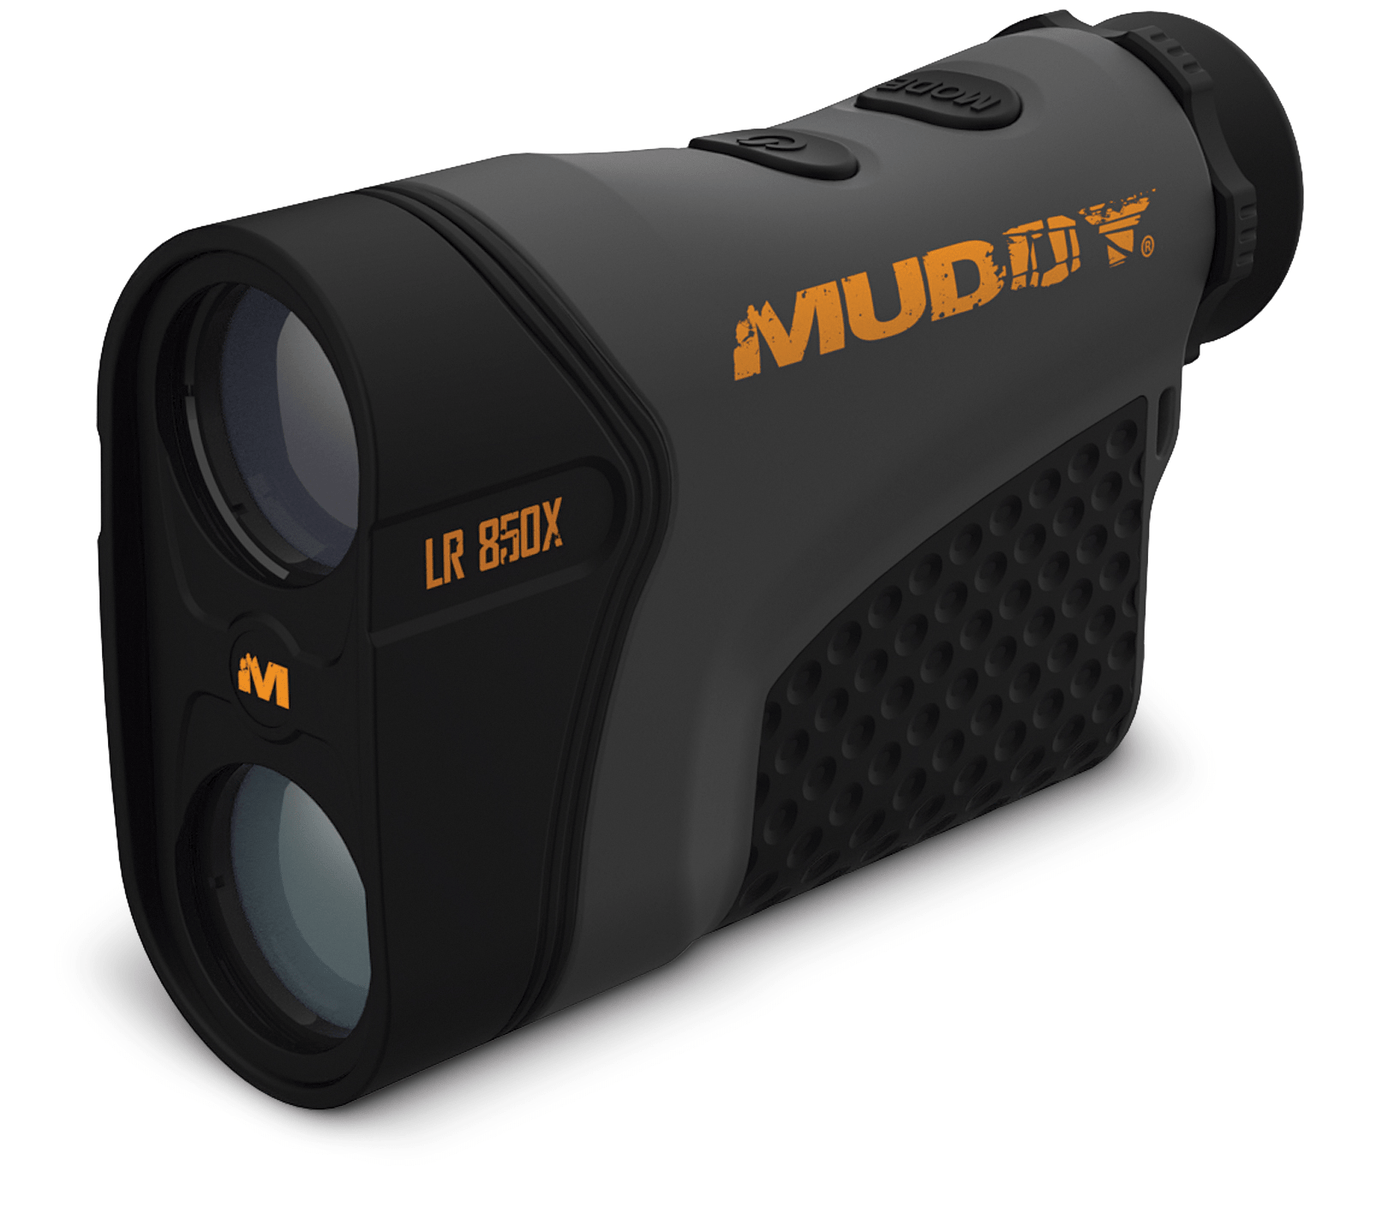 Muddy Muddy 850 W Hd, Muddy Mud-lr850x  Muddy Range Finder  850 W Hd Optics